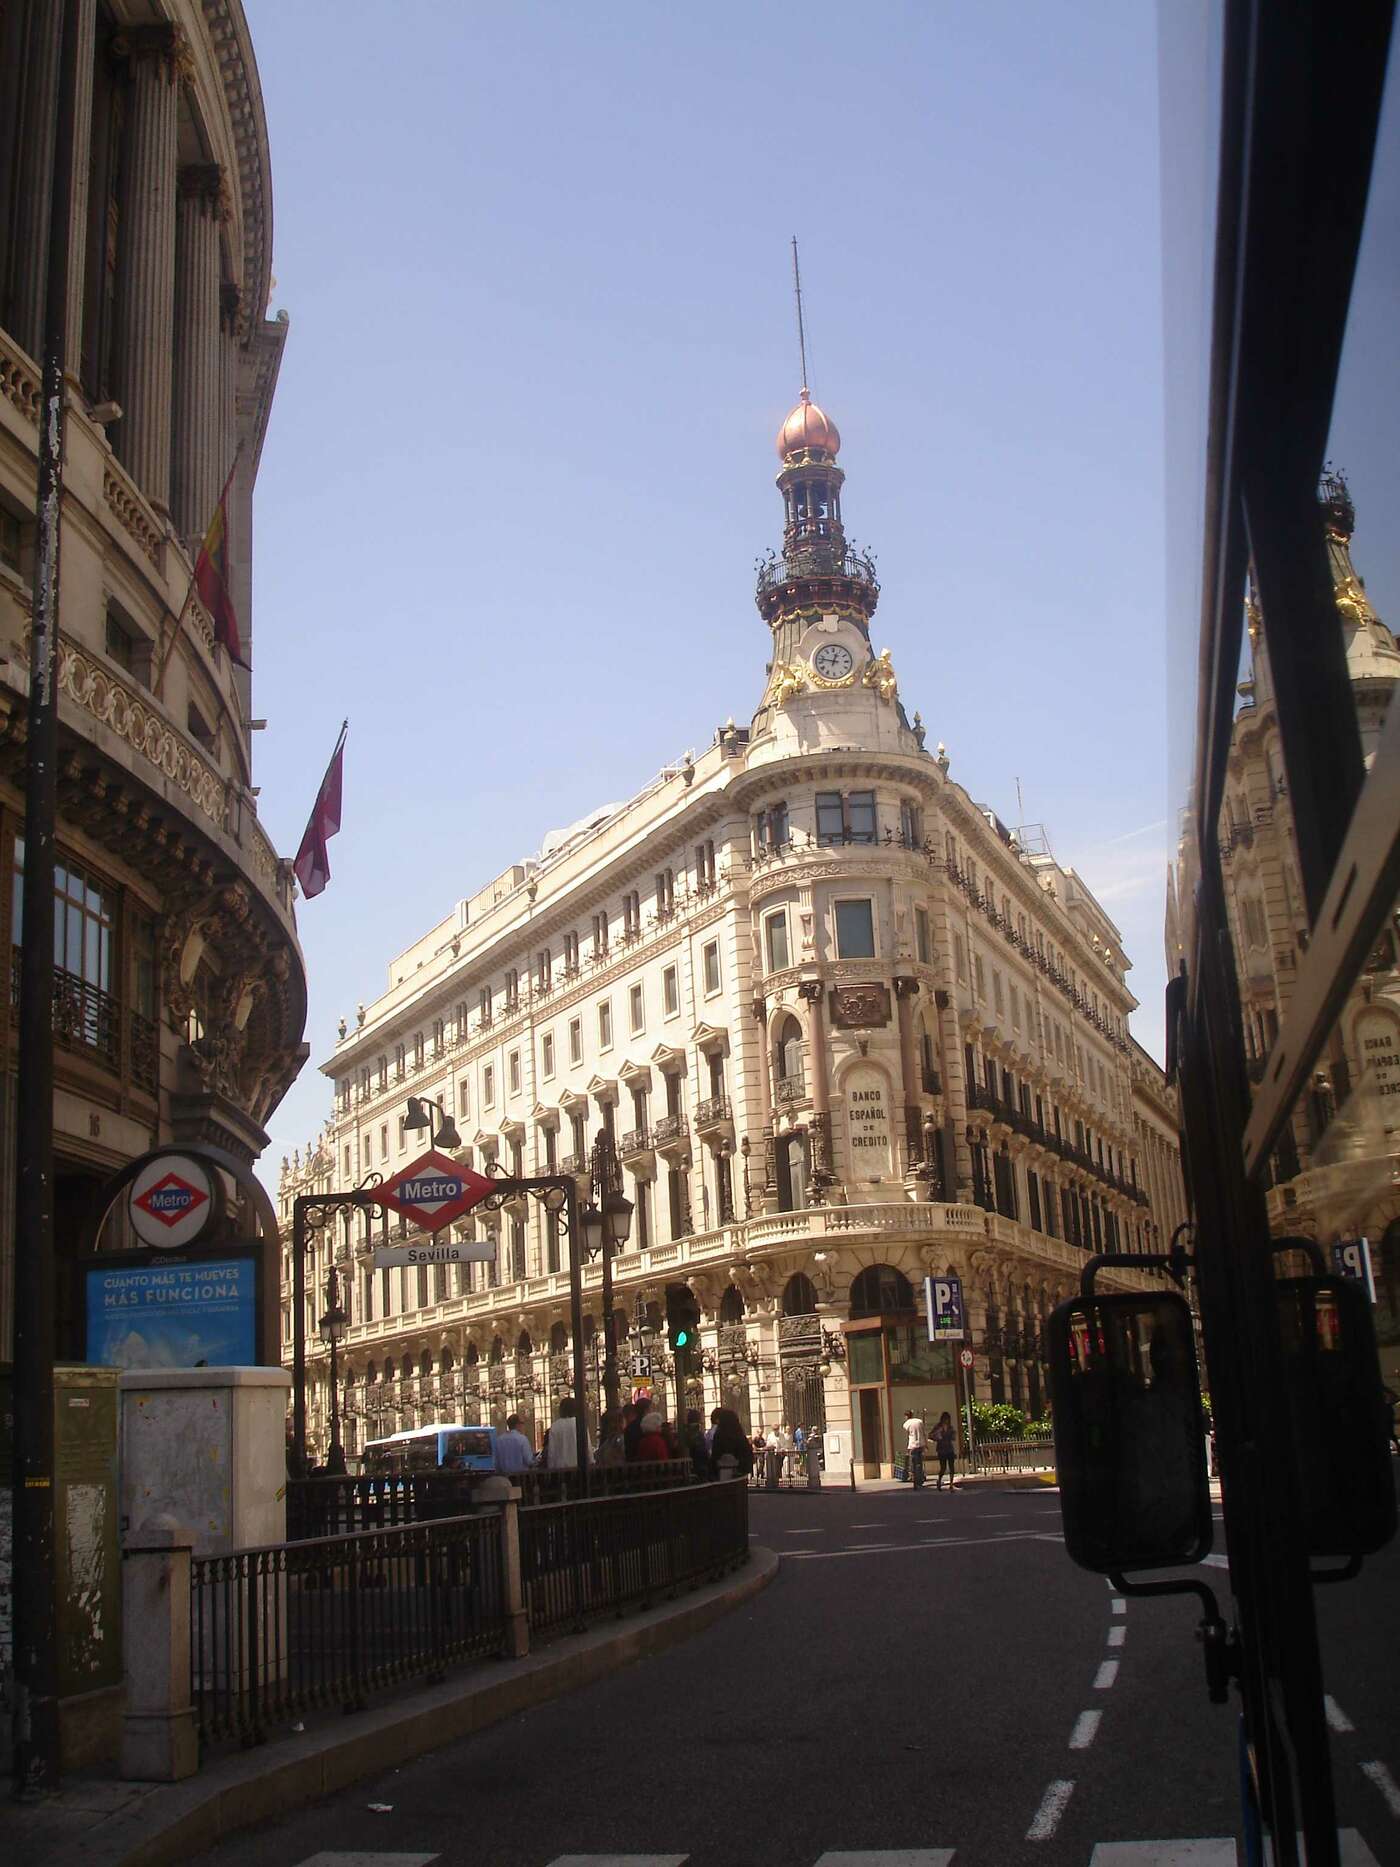 Banco español mit Metrostation Sevilla